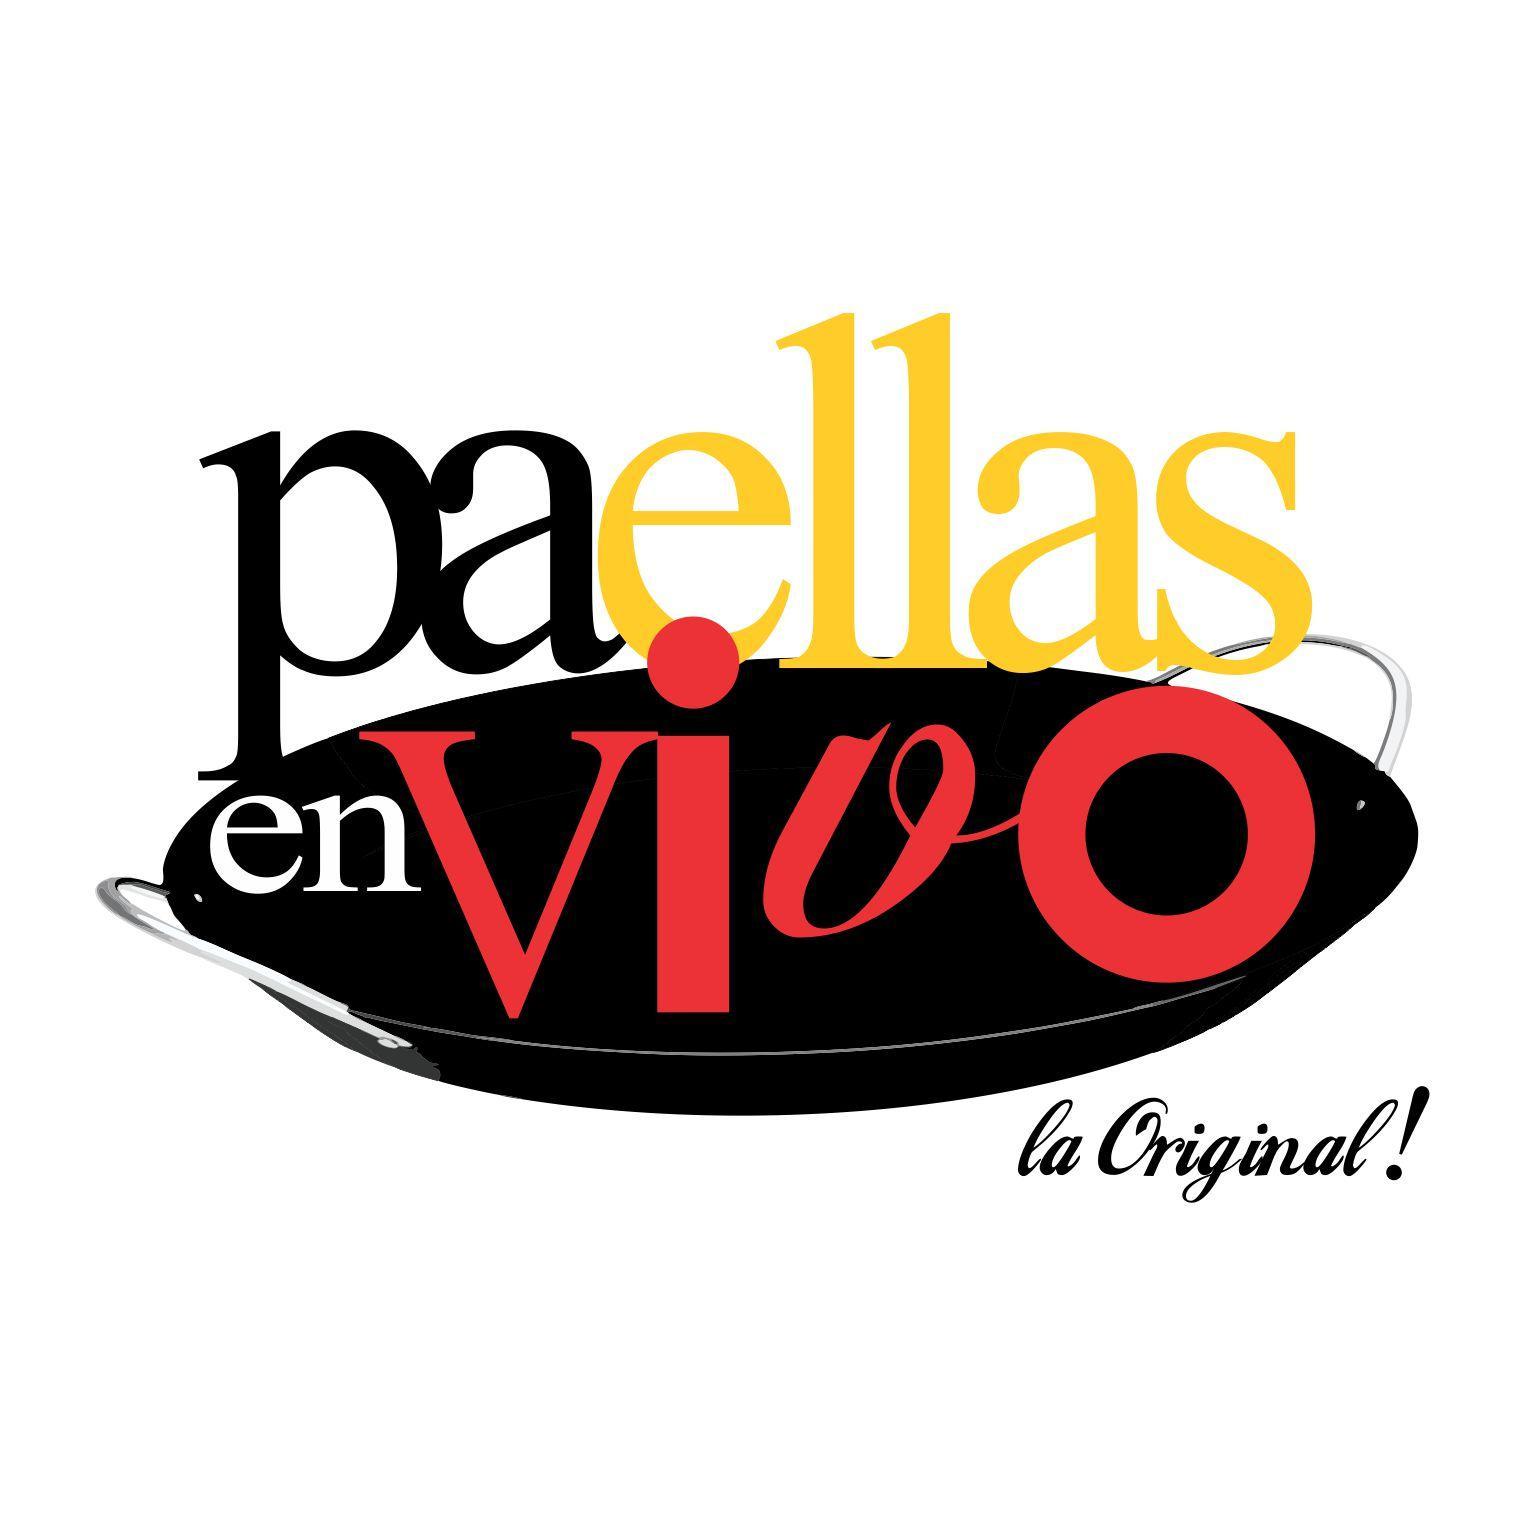 Catering de Paellas,Tapas y mucho más! Somos la marca original! #paellasenvivo siguenos en instag @paellasenvivo